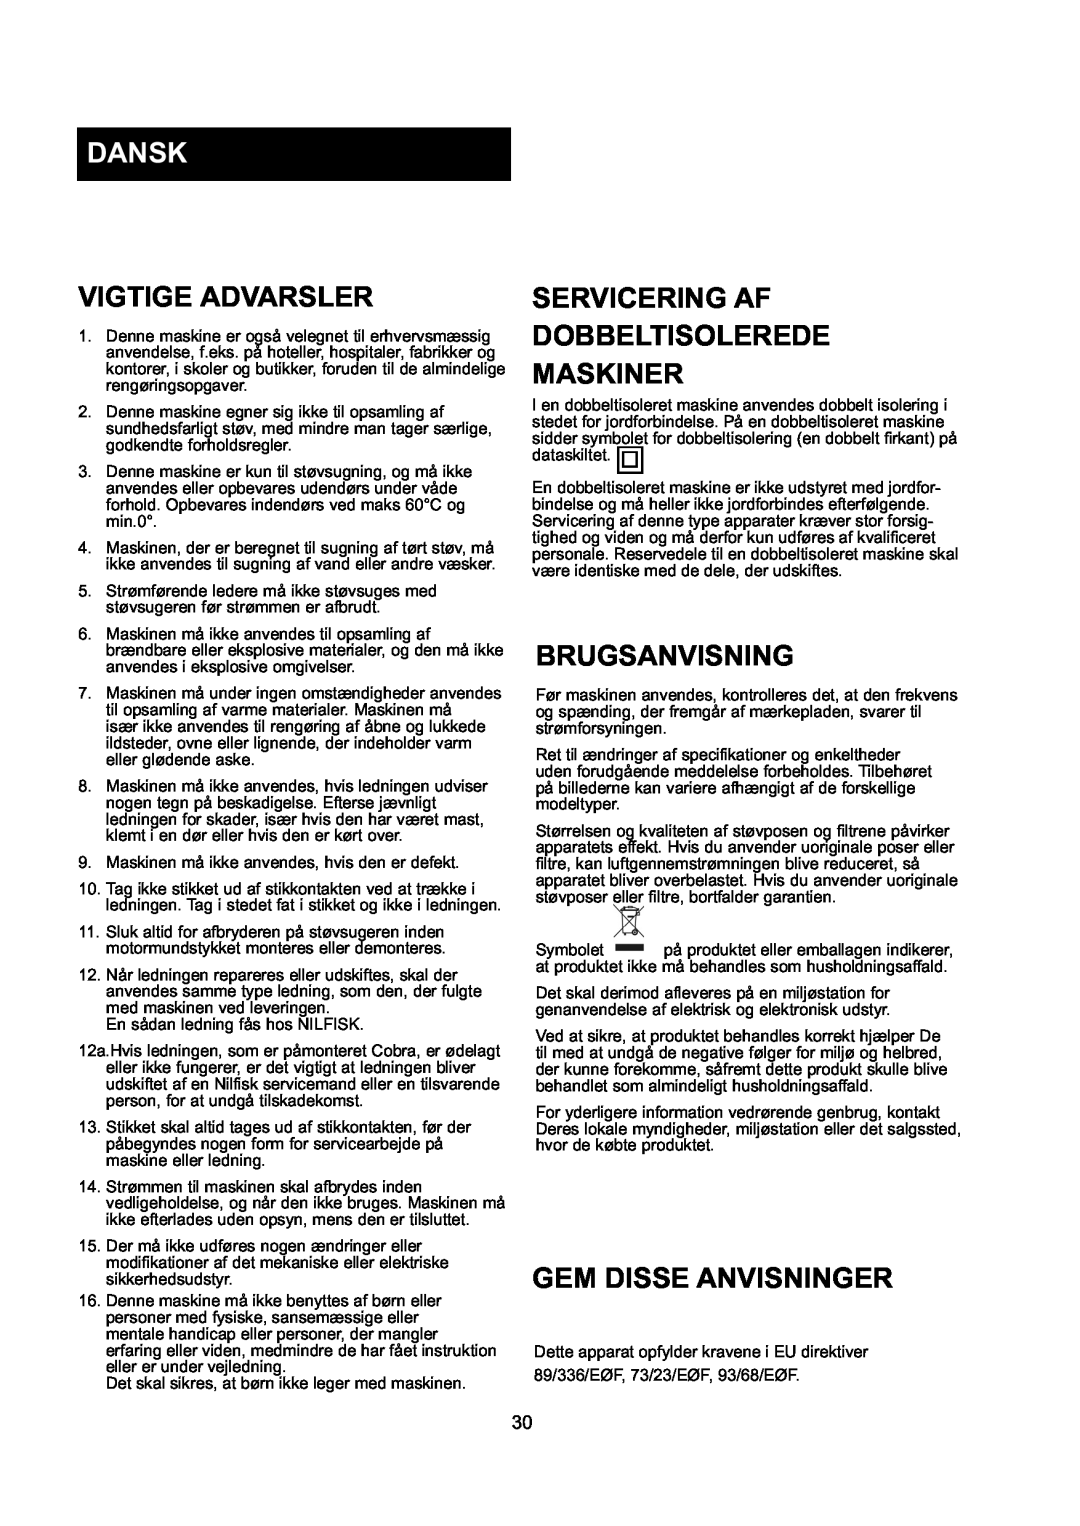 Nilfisk-ALTO GD 10 Back, GD 5 Back manual Dansk, Vigtige Advarsler, Servicering Af Dobbeltisolerede Maskiner, Brugsanvisning 